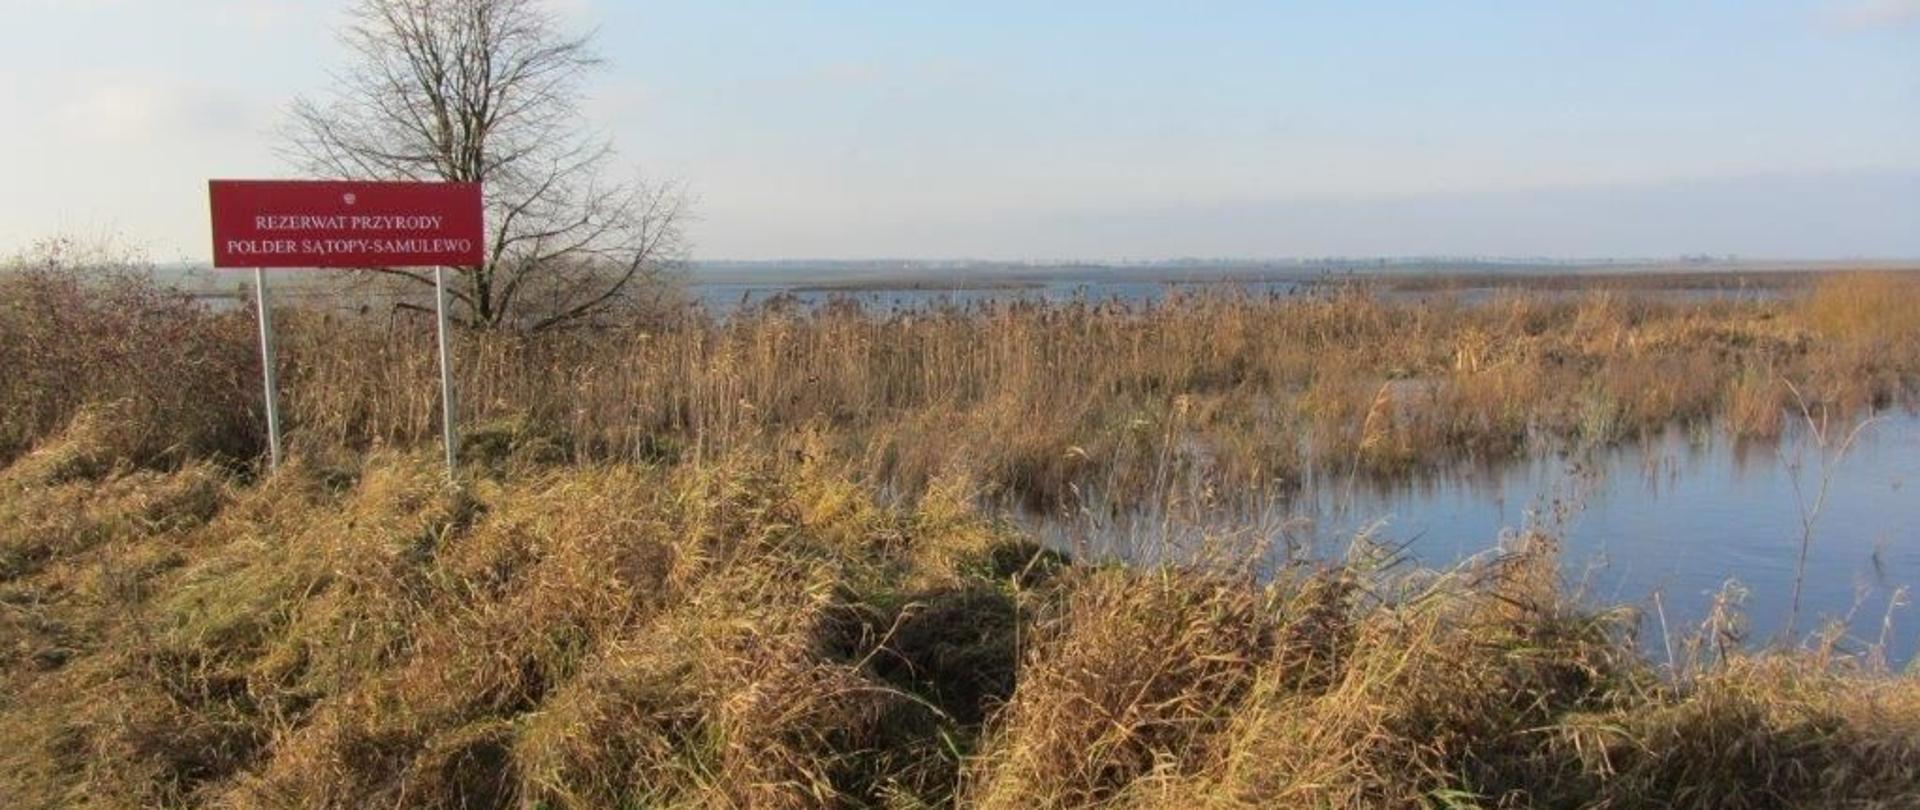 Rozlewisko wodne z trzcinowiskiem. Po lewej stronie czerwona tablica informacyjna z nazwą rezerwatu przyrody "Polder Sątopy-Samulewo"